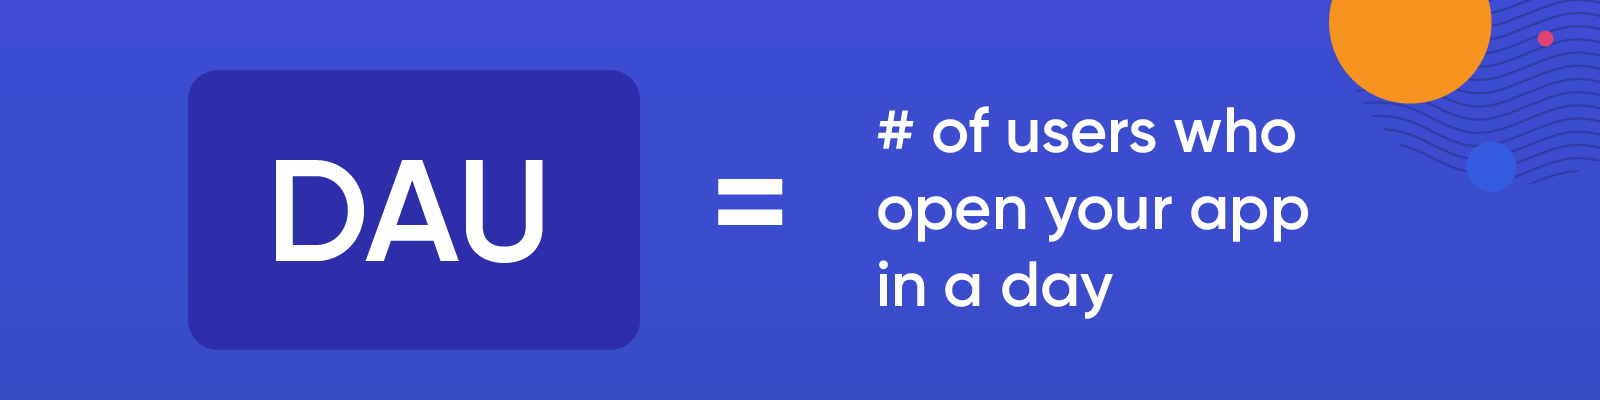 Apa itu DAU? Jumlah pengguna yang membuka aplikasi Anda dalam sehari.